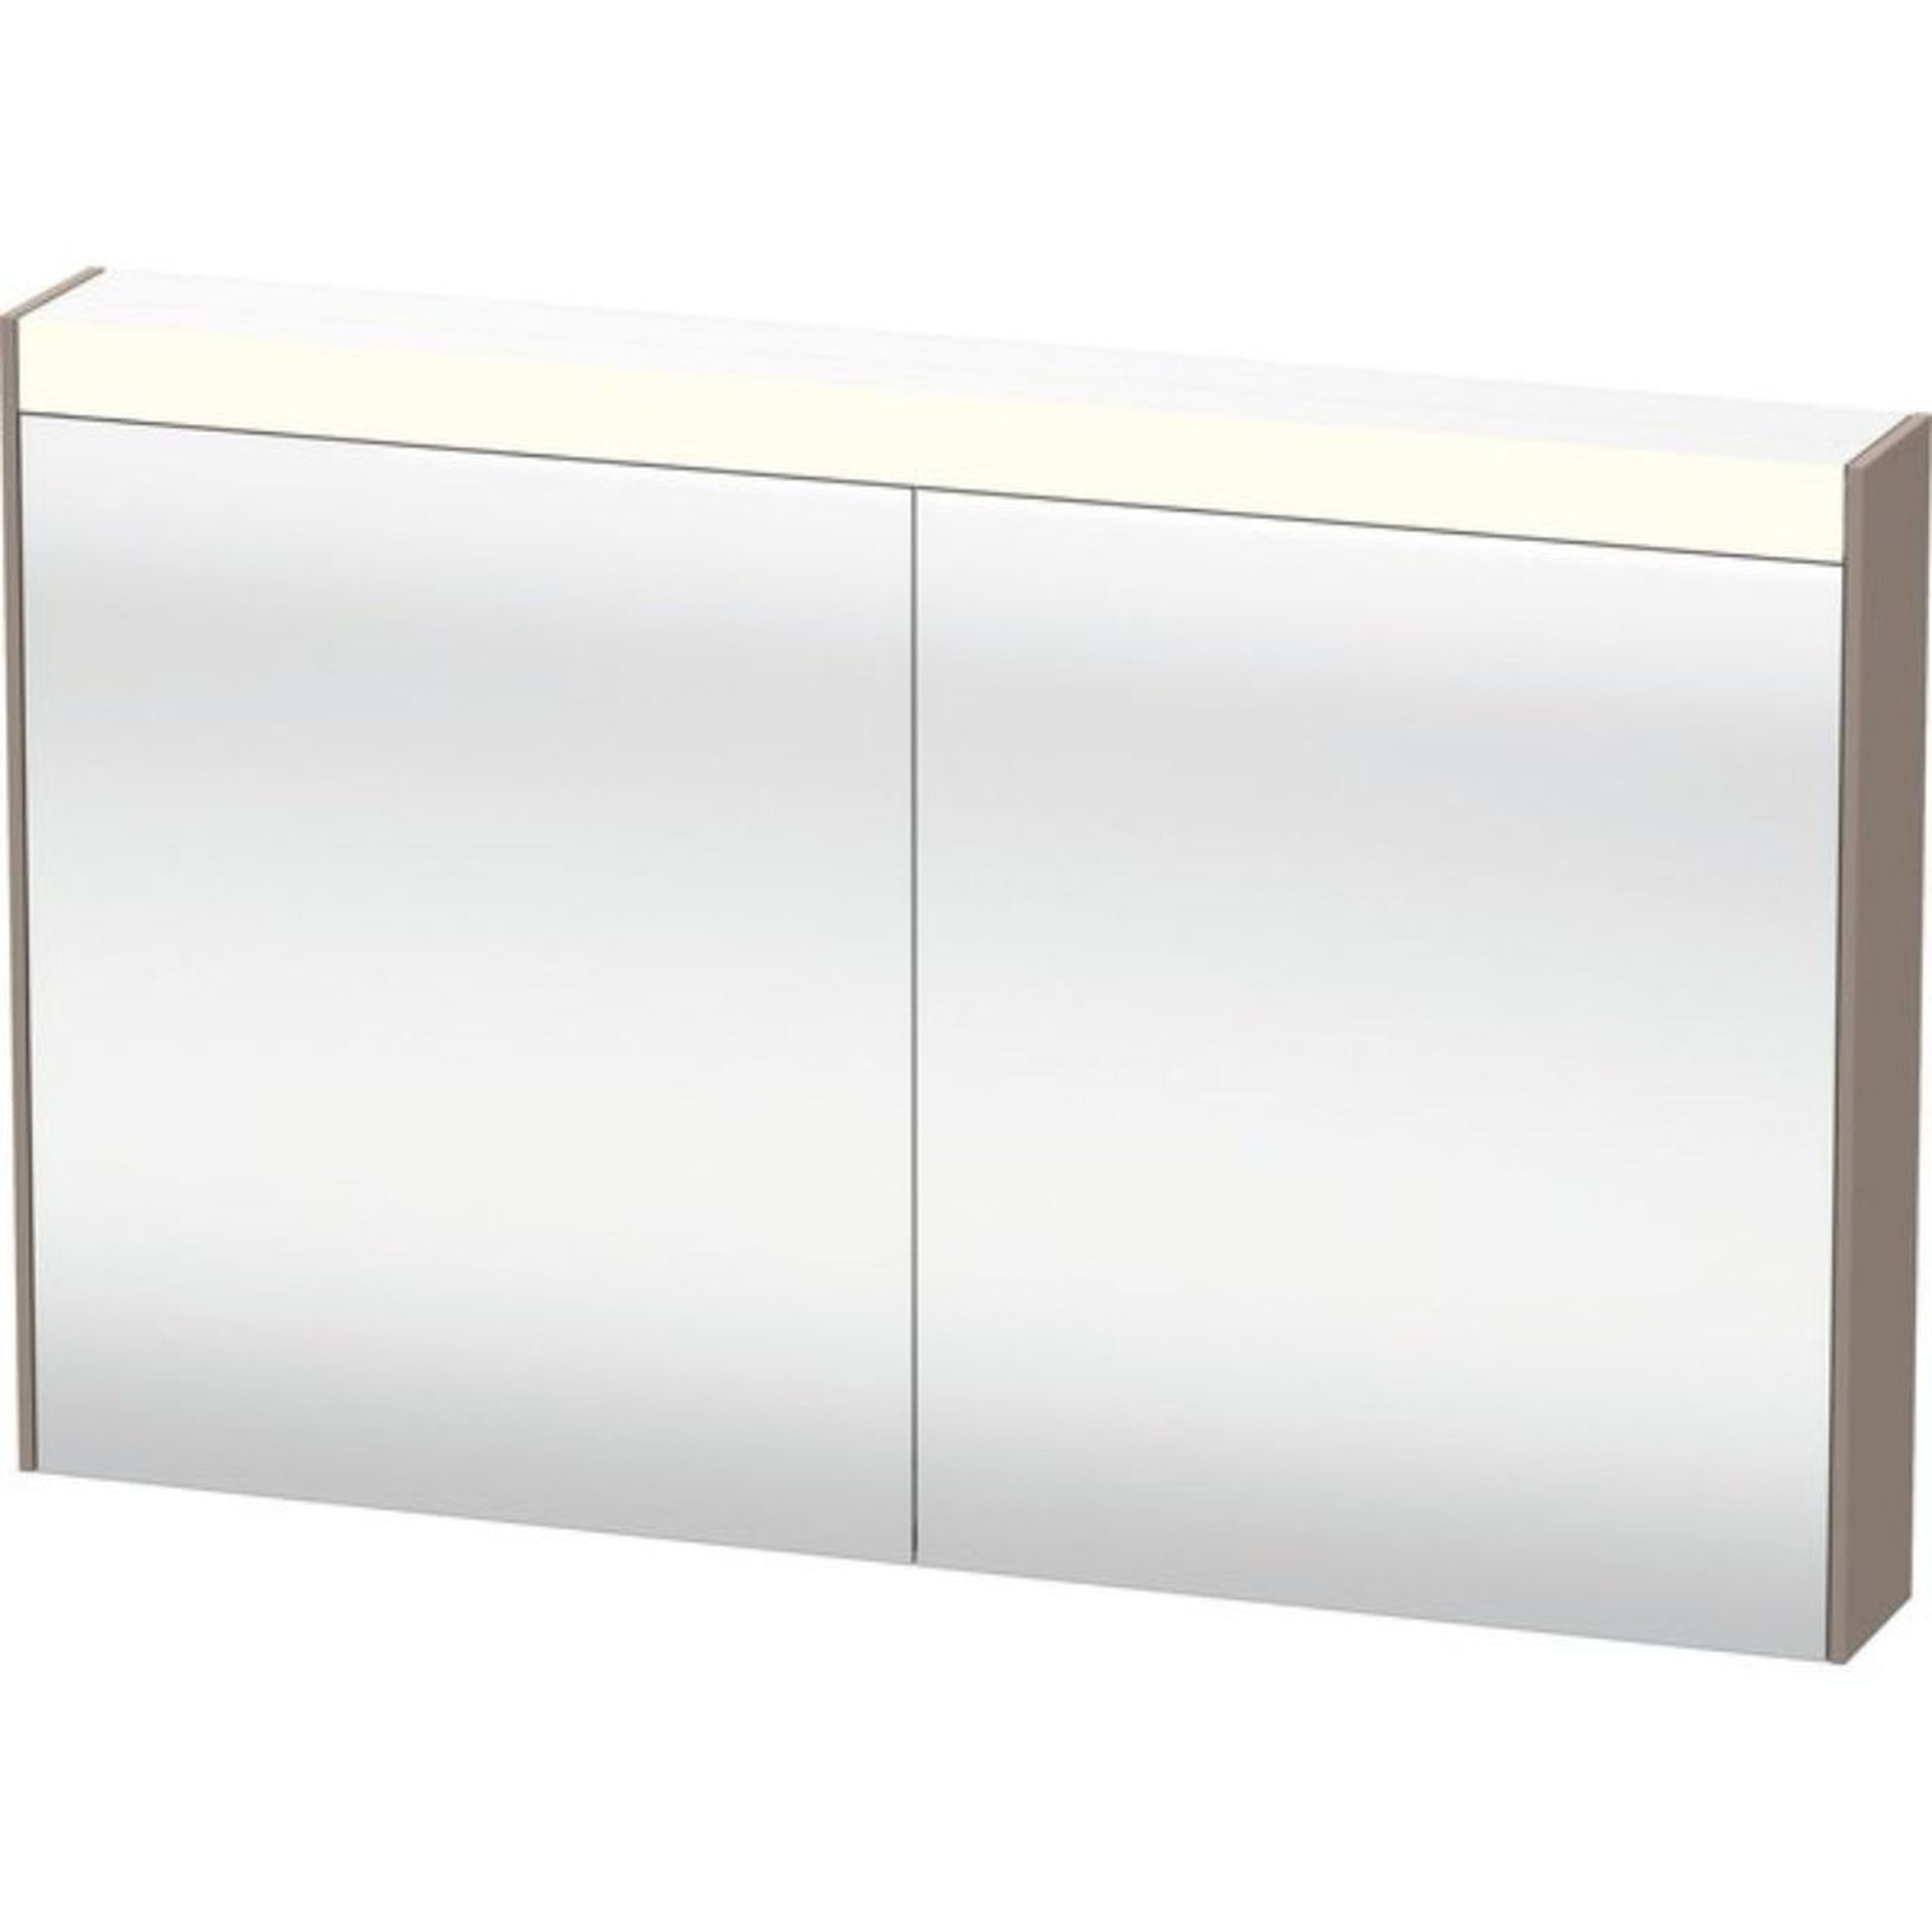 Duravit Brioso 48" x 30" x 6" Mirror Cabinet With Lighting Basalt Matt